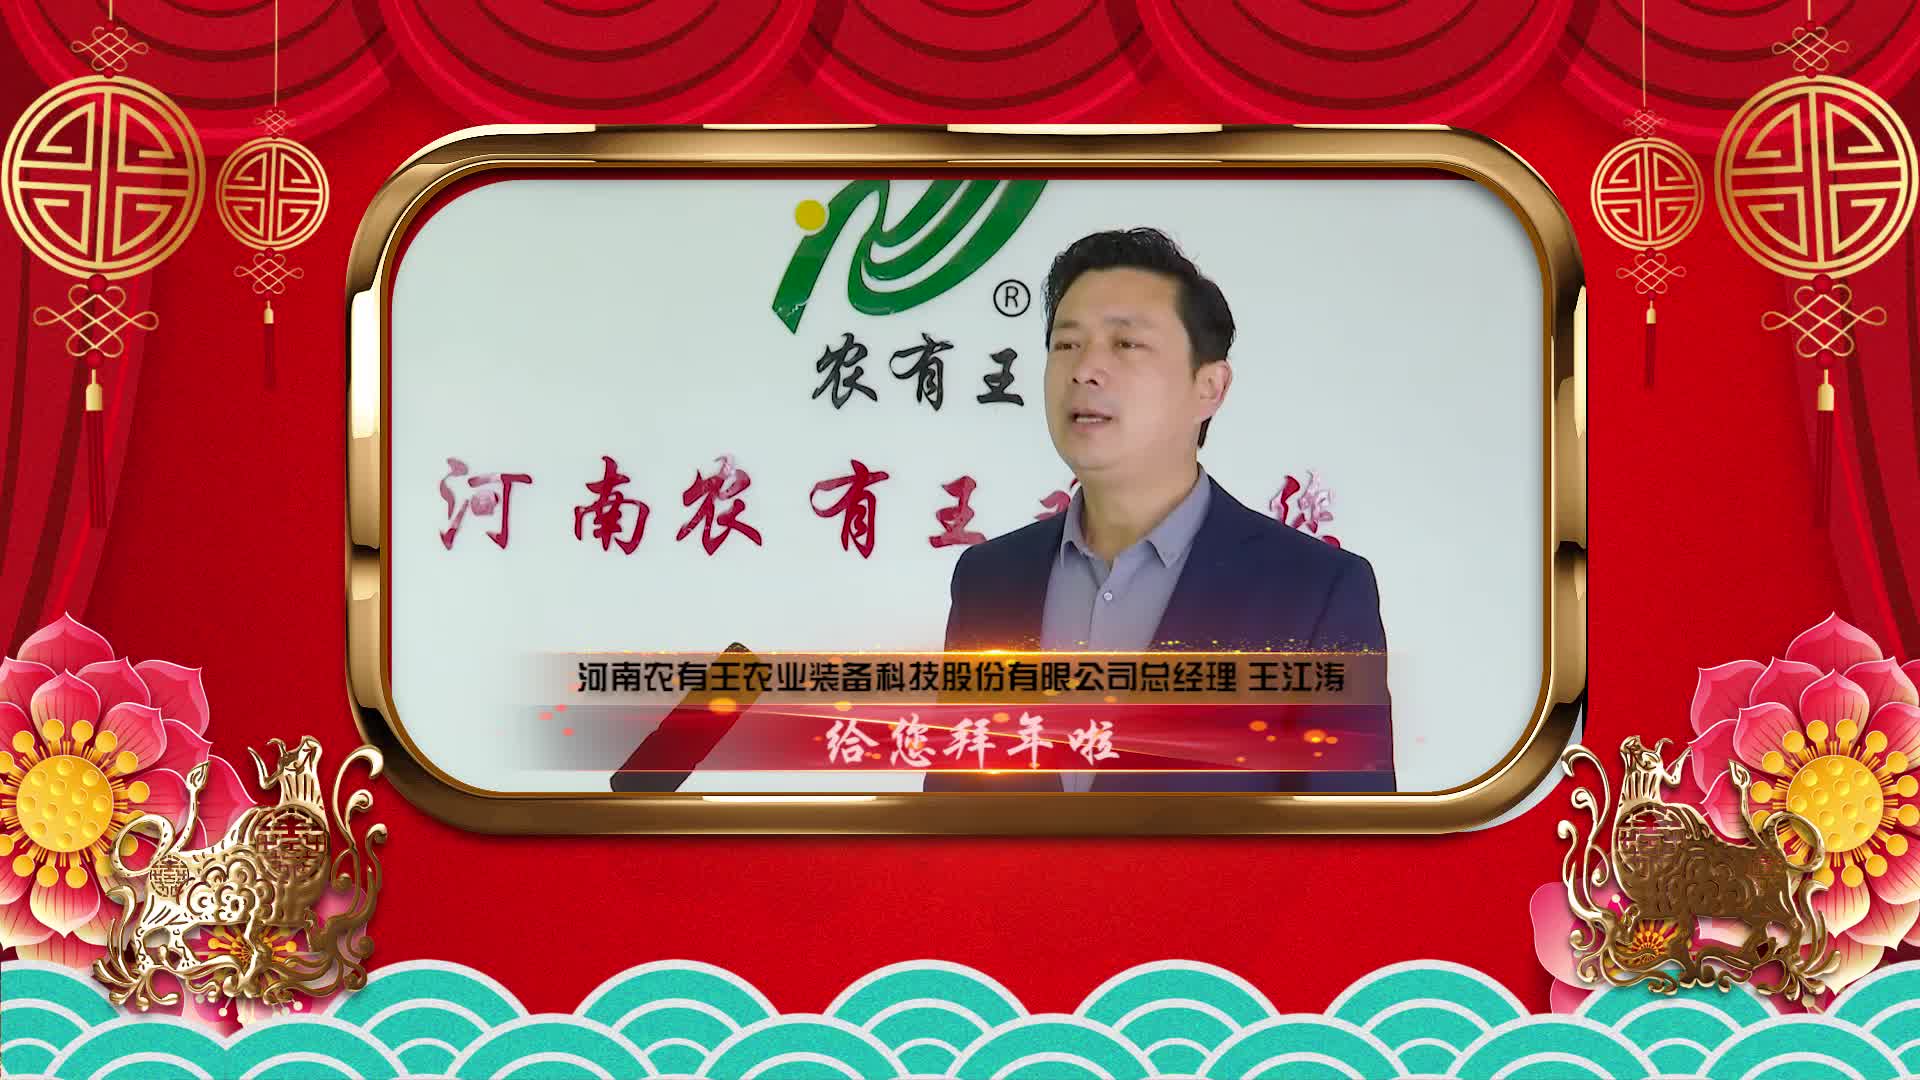 河南农有王农业装备科技股份有限公司 总经理 王江涛 给您拜年了